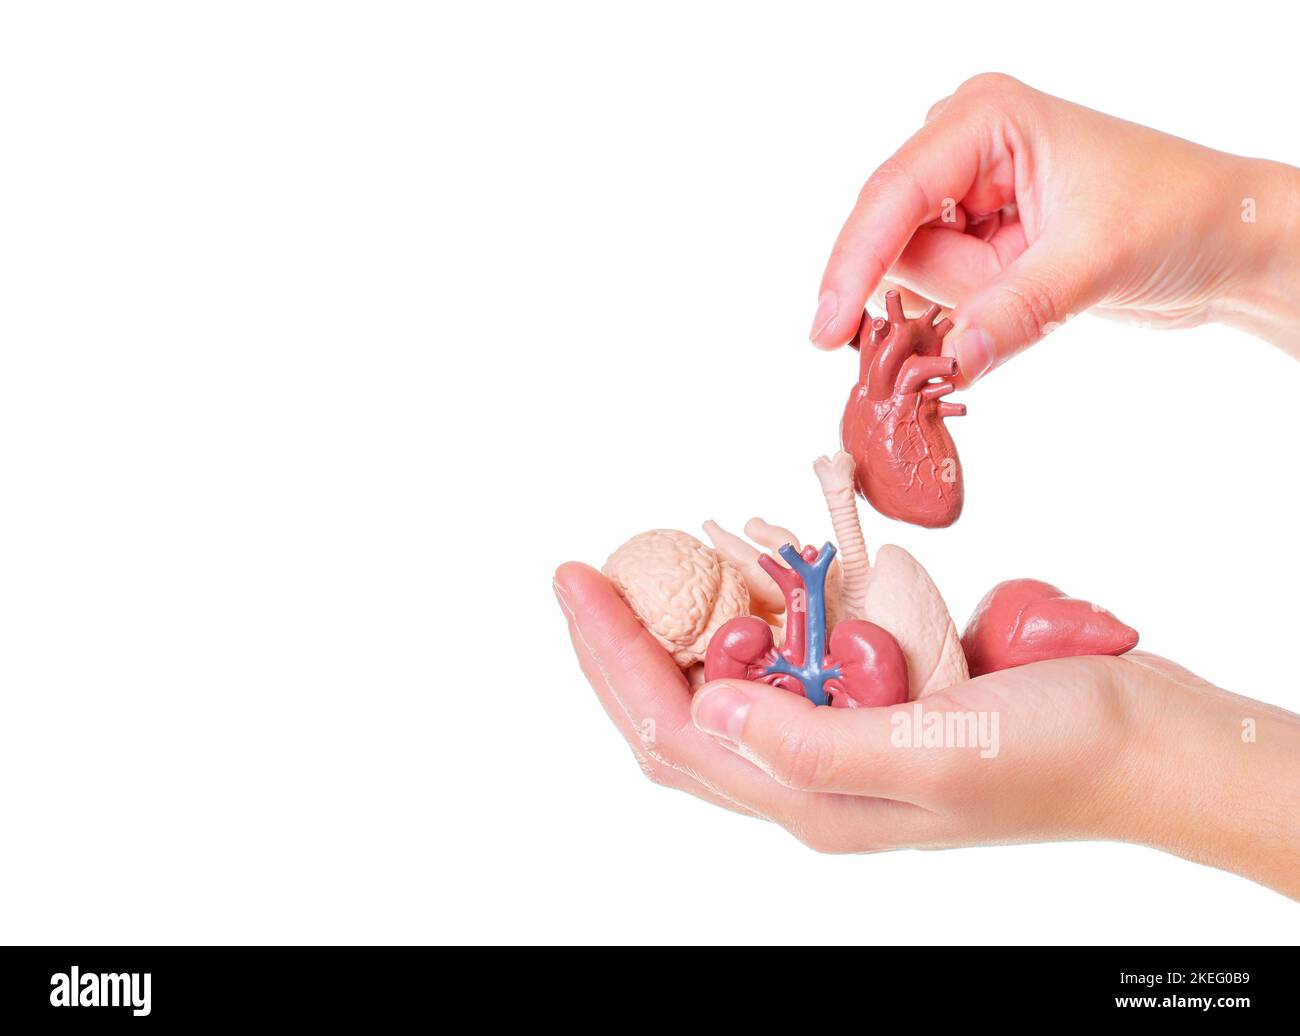 Organi del corpo umano giocattolo in mani isolate su sfondo bianco. Apprendimento con modelli anatomici. Foto Stock